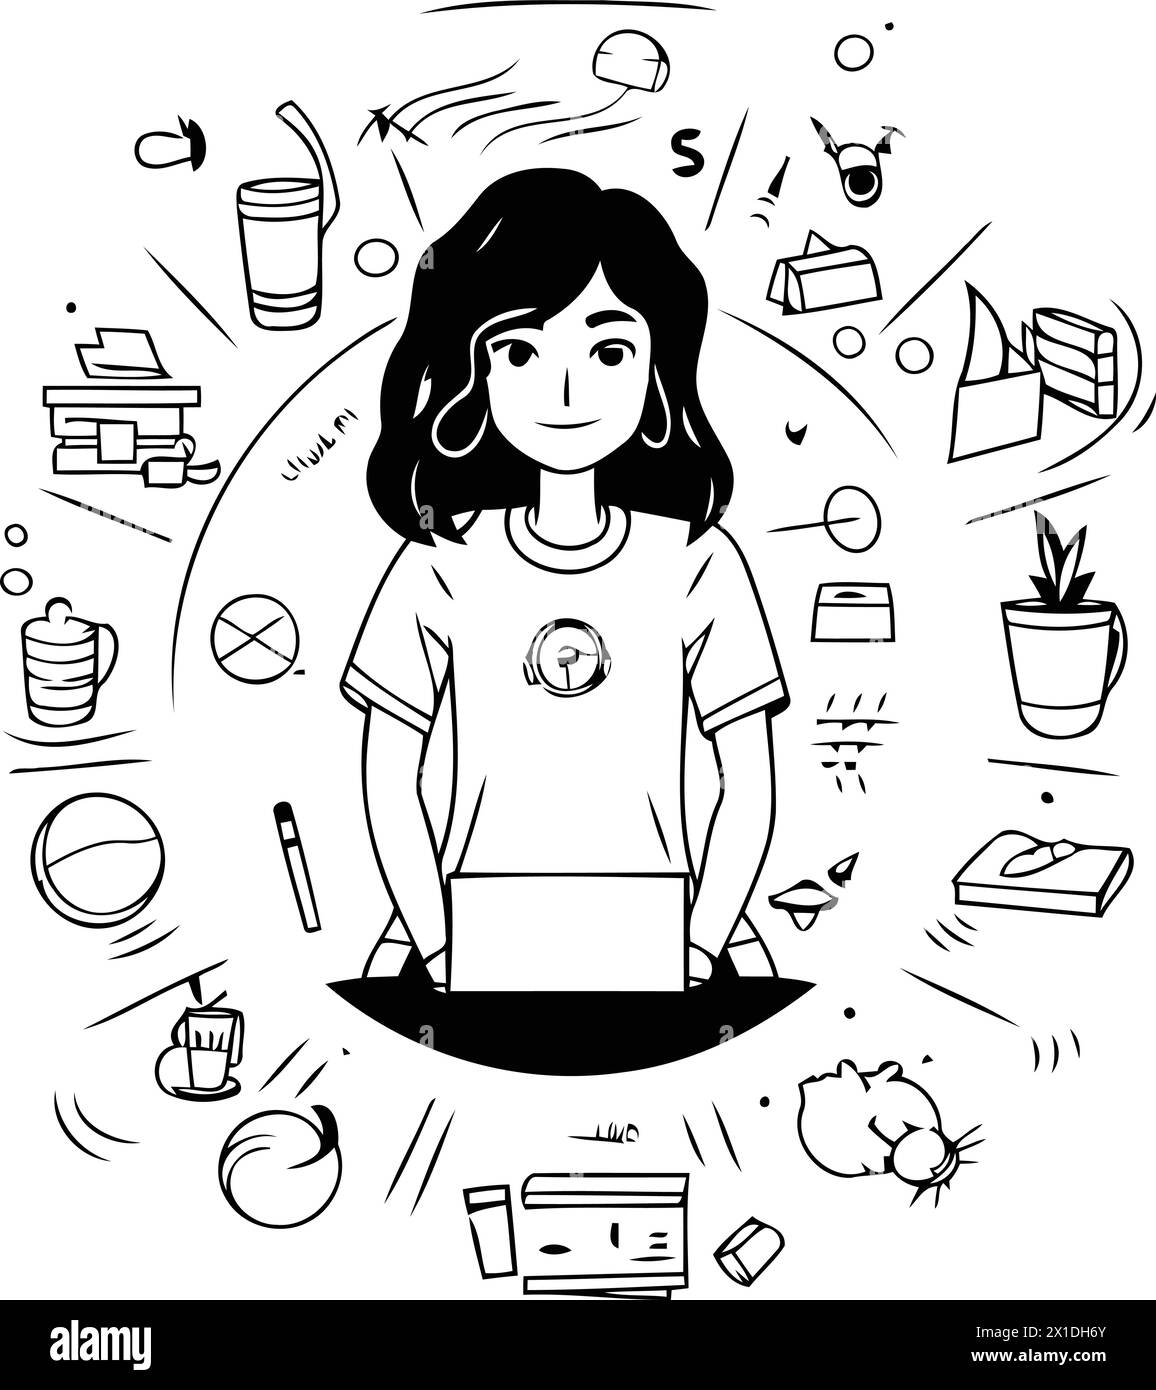 Illustrazione vettoriale di una ragazza con un notebook in mano. Il concetto di autosviluppo. Illustrazione Vettoriale